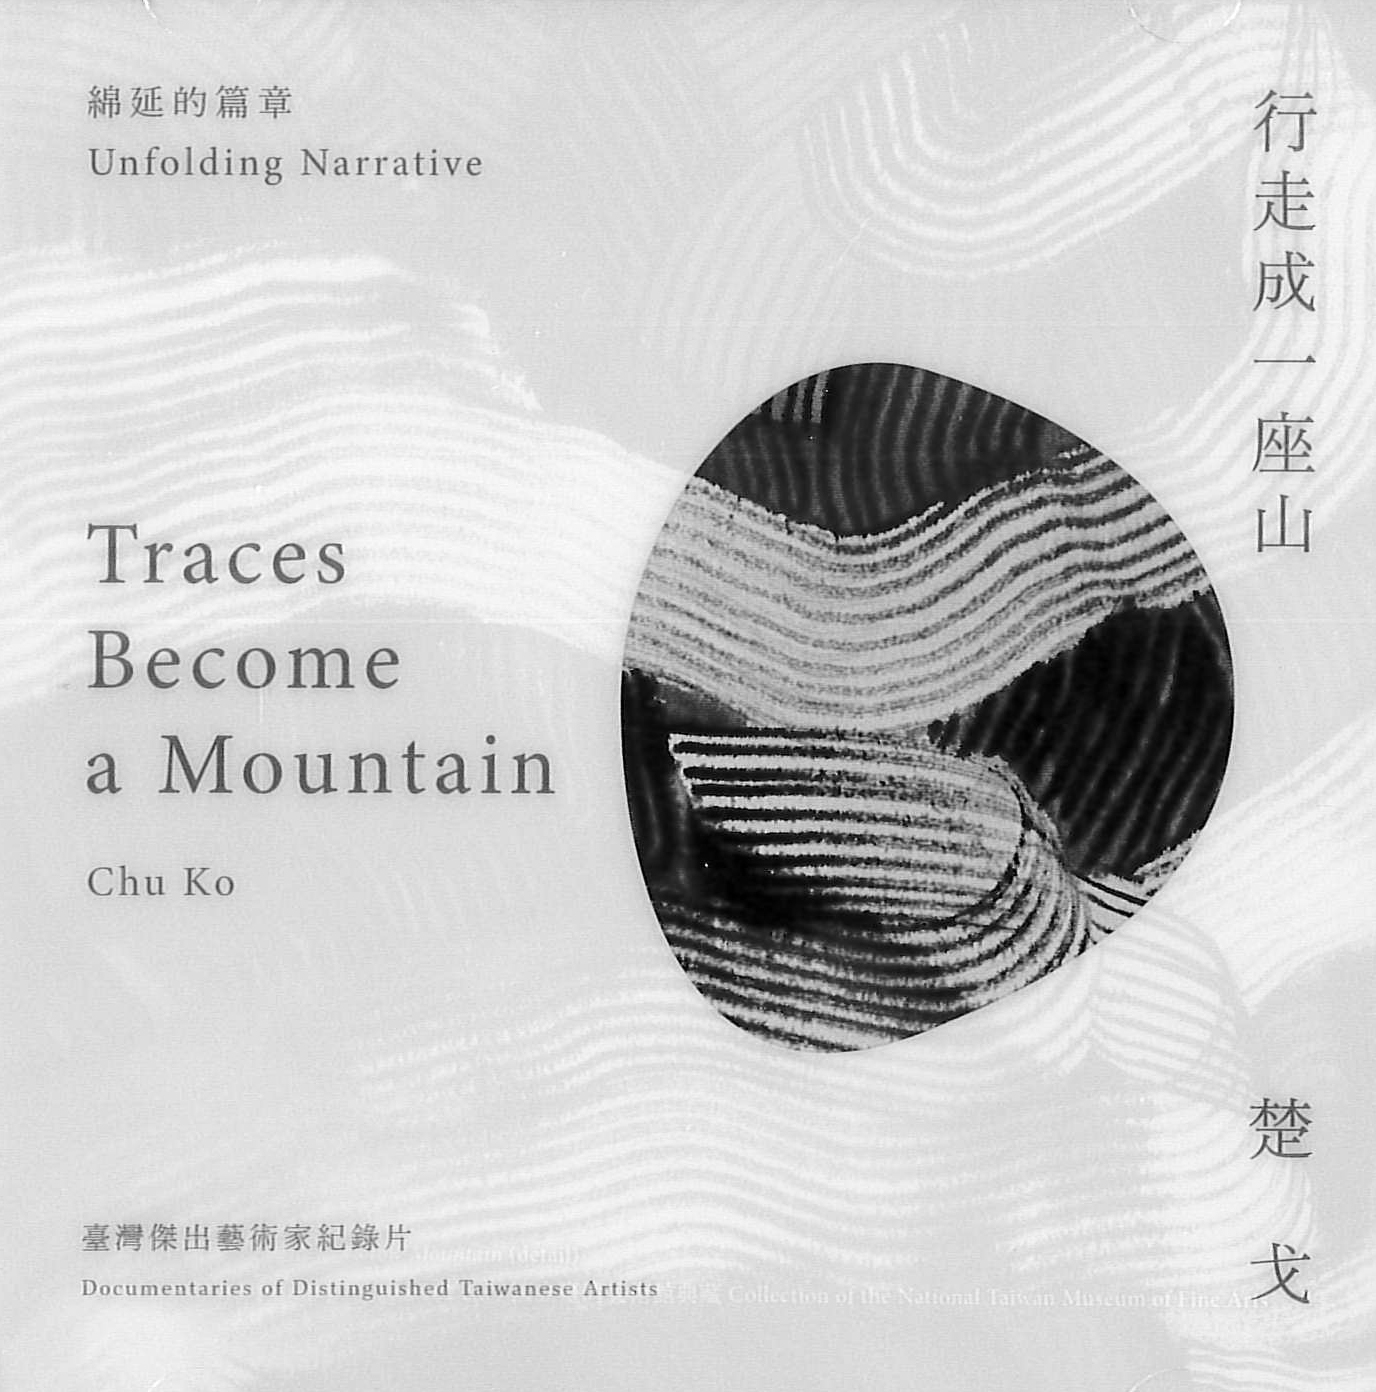 行走成一座山:楚戈 : Traces become a mountain : Chu Ko